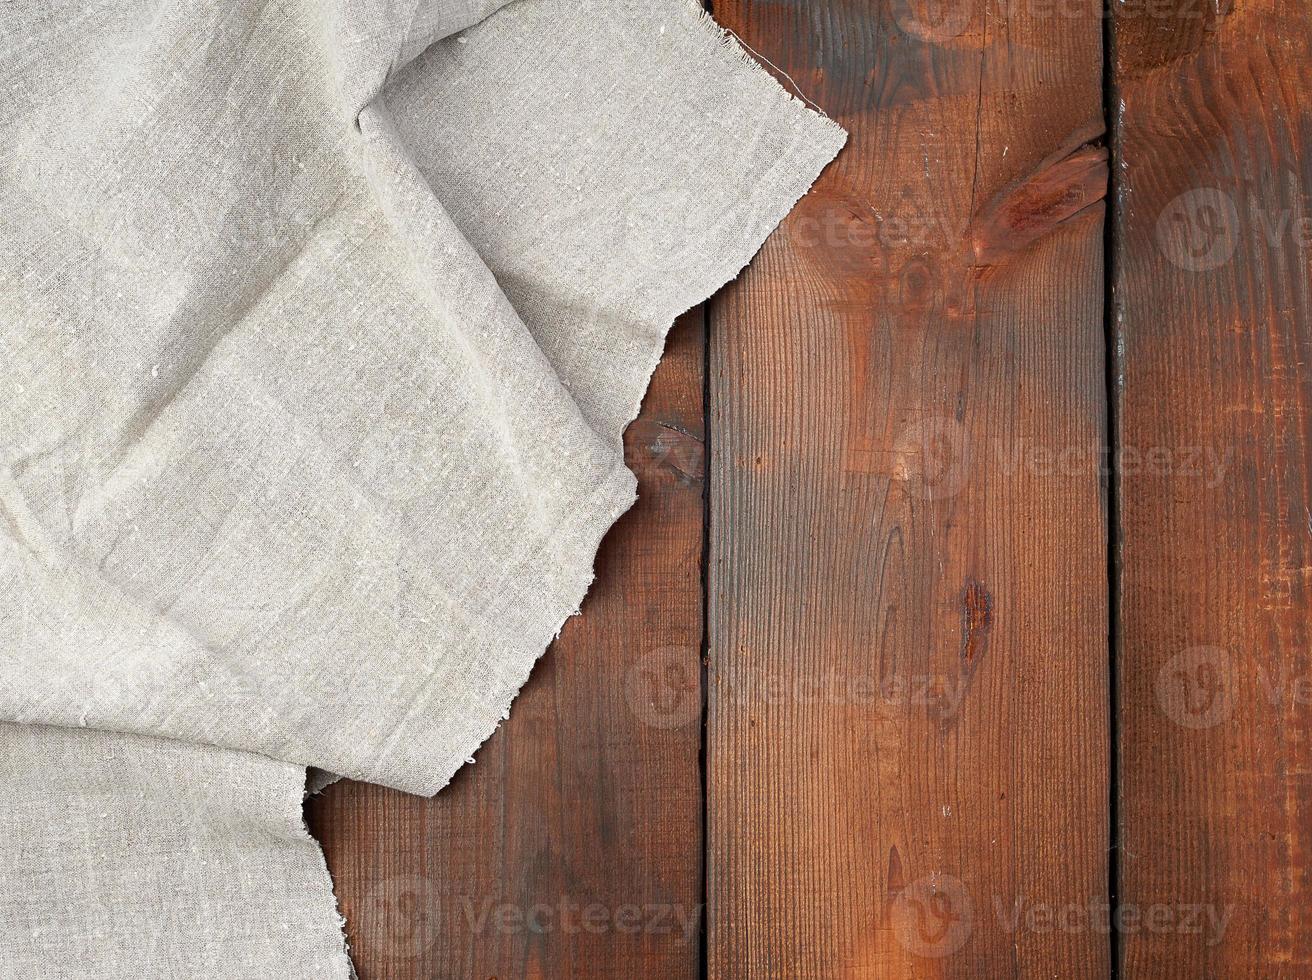 toalha de linho cinza sobre fundo de madeira, vista de cima foto